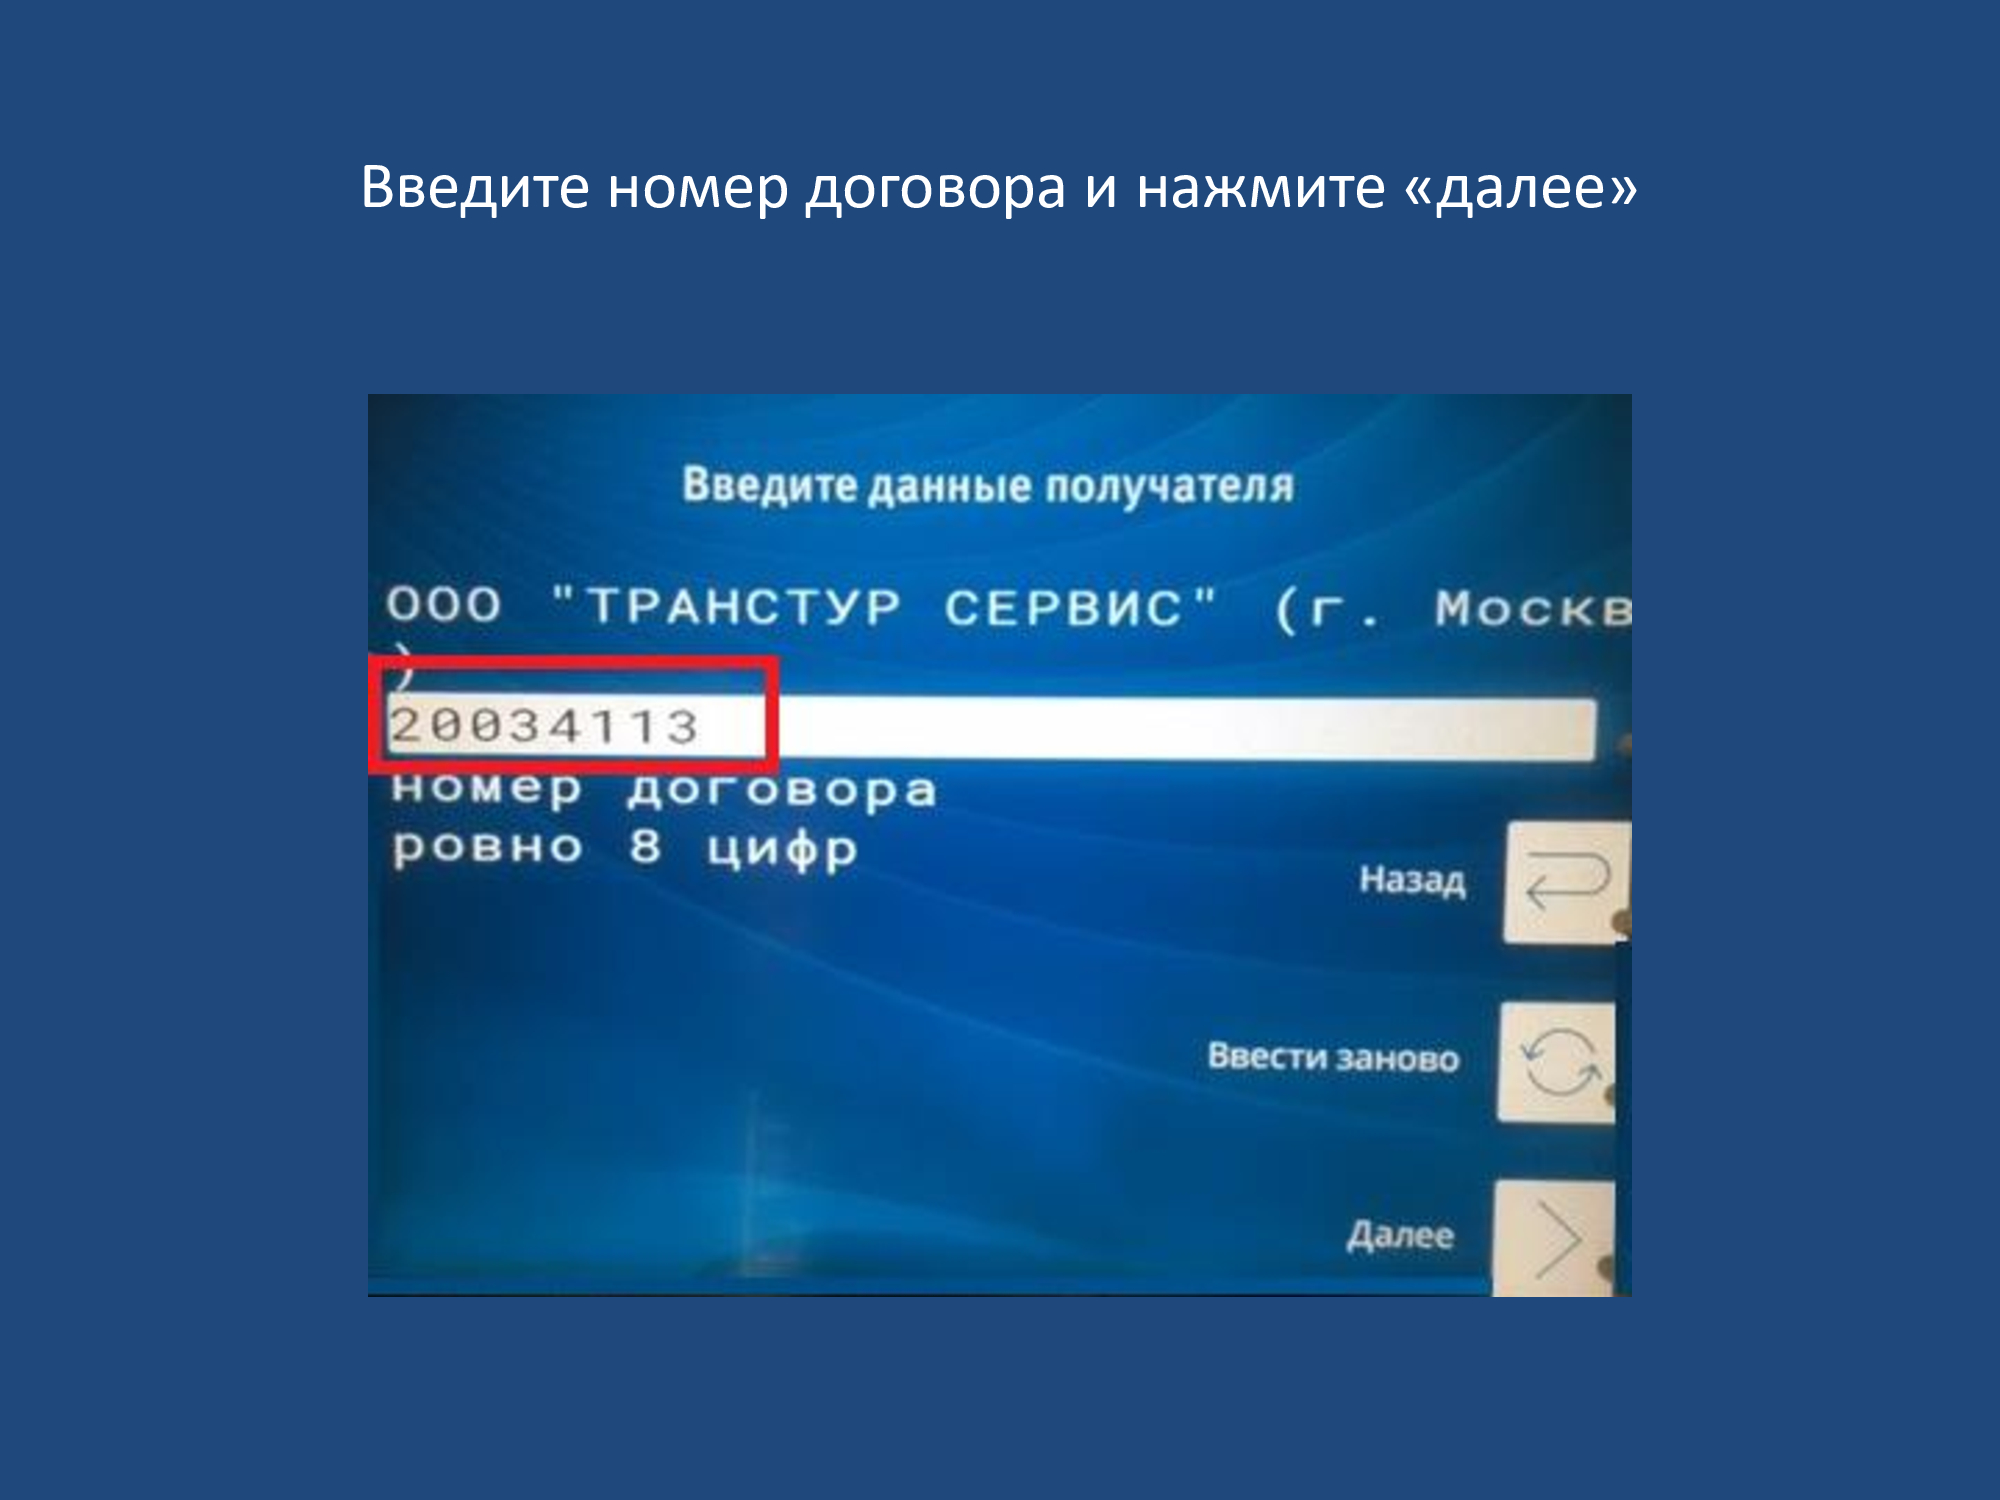 прием платежа для данного провайдера запрещен steam казахстан (120) фото